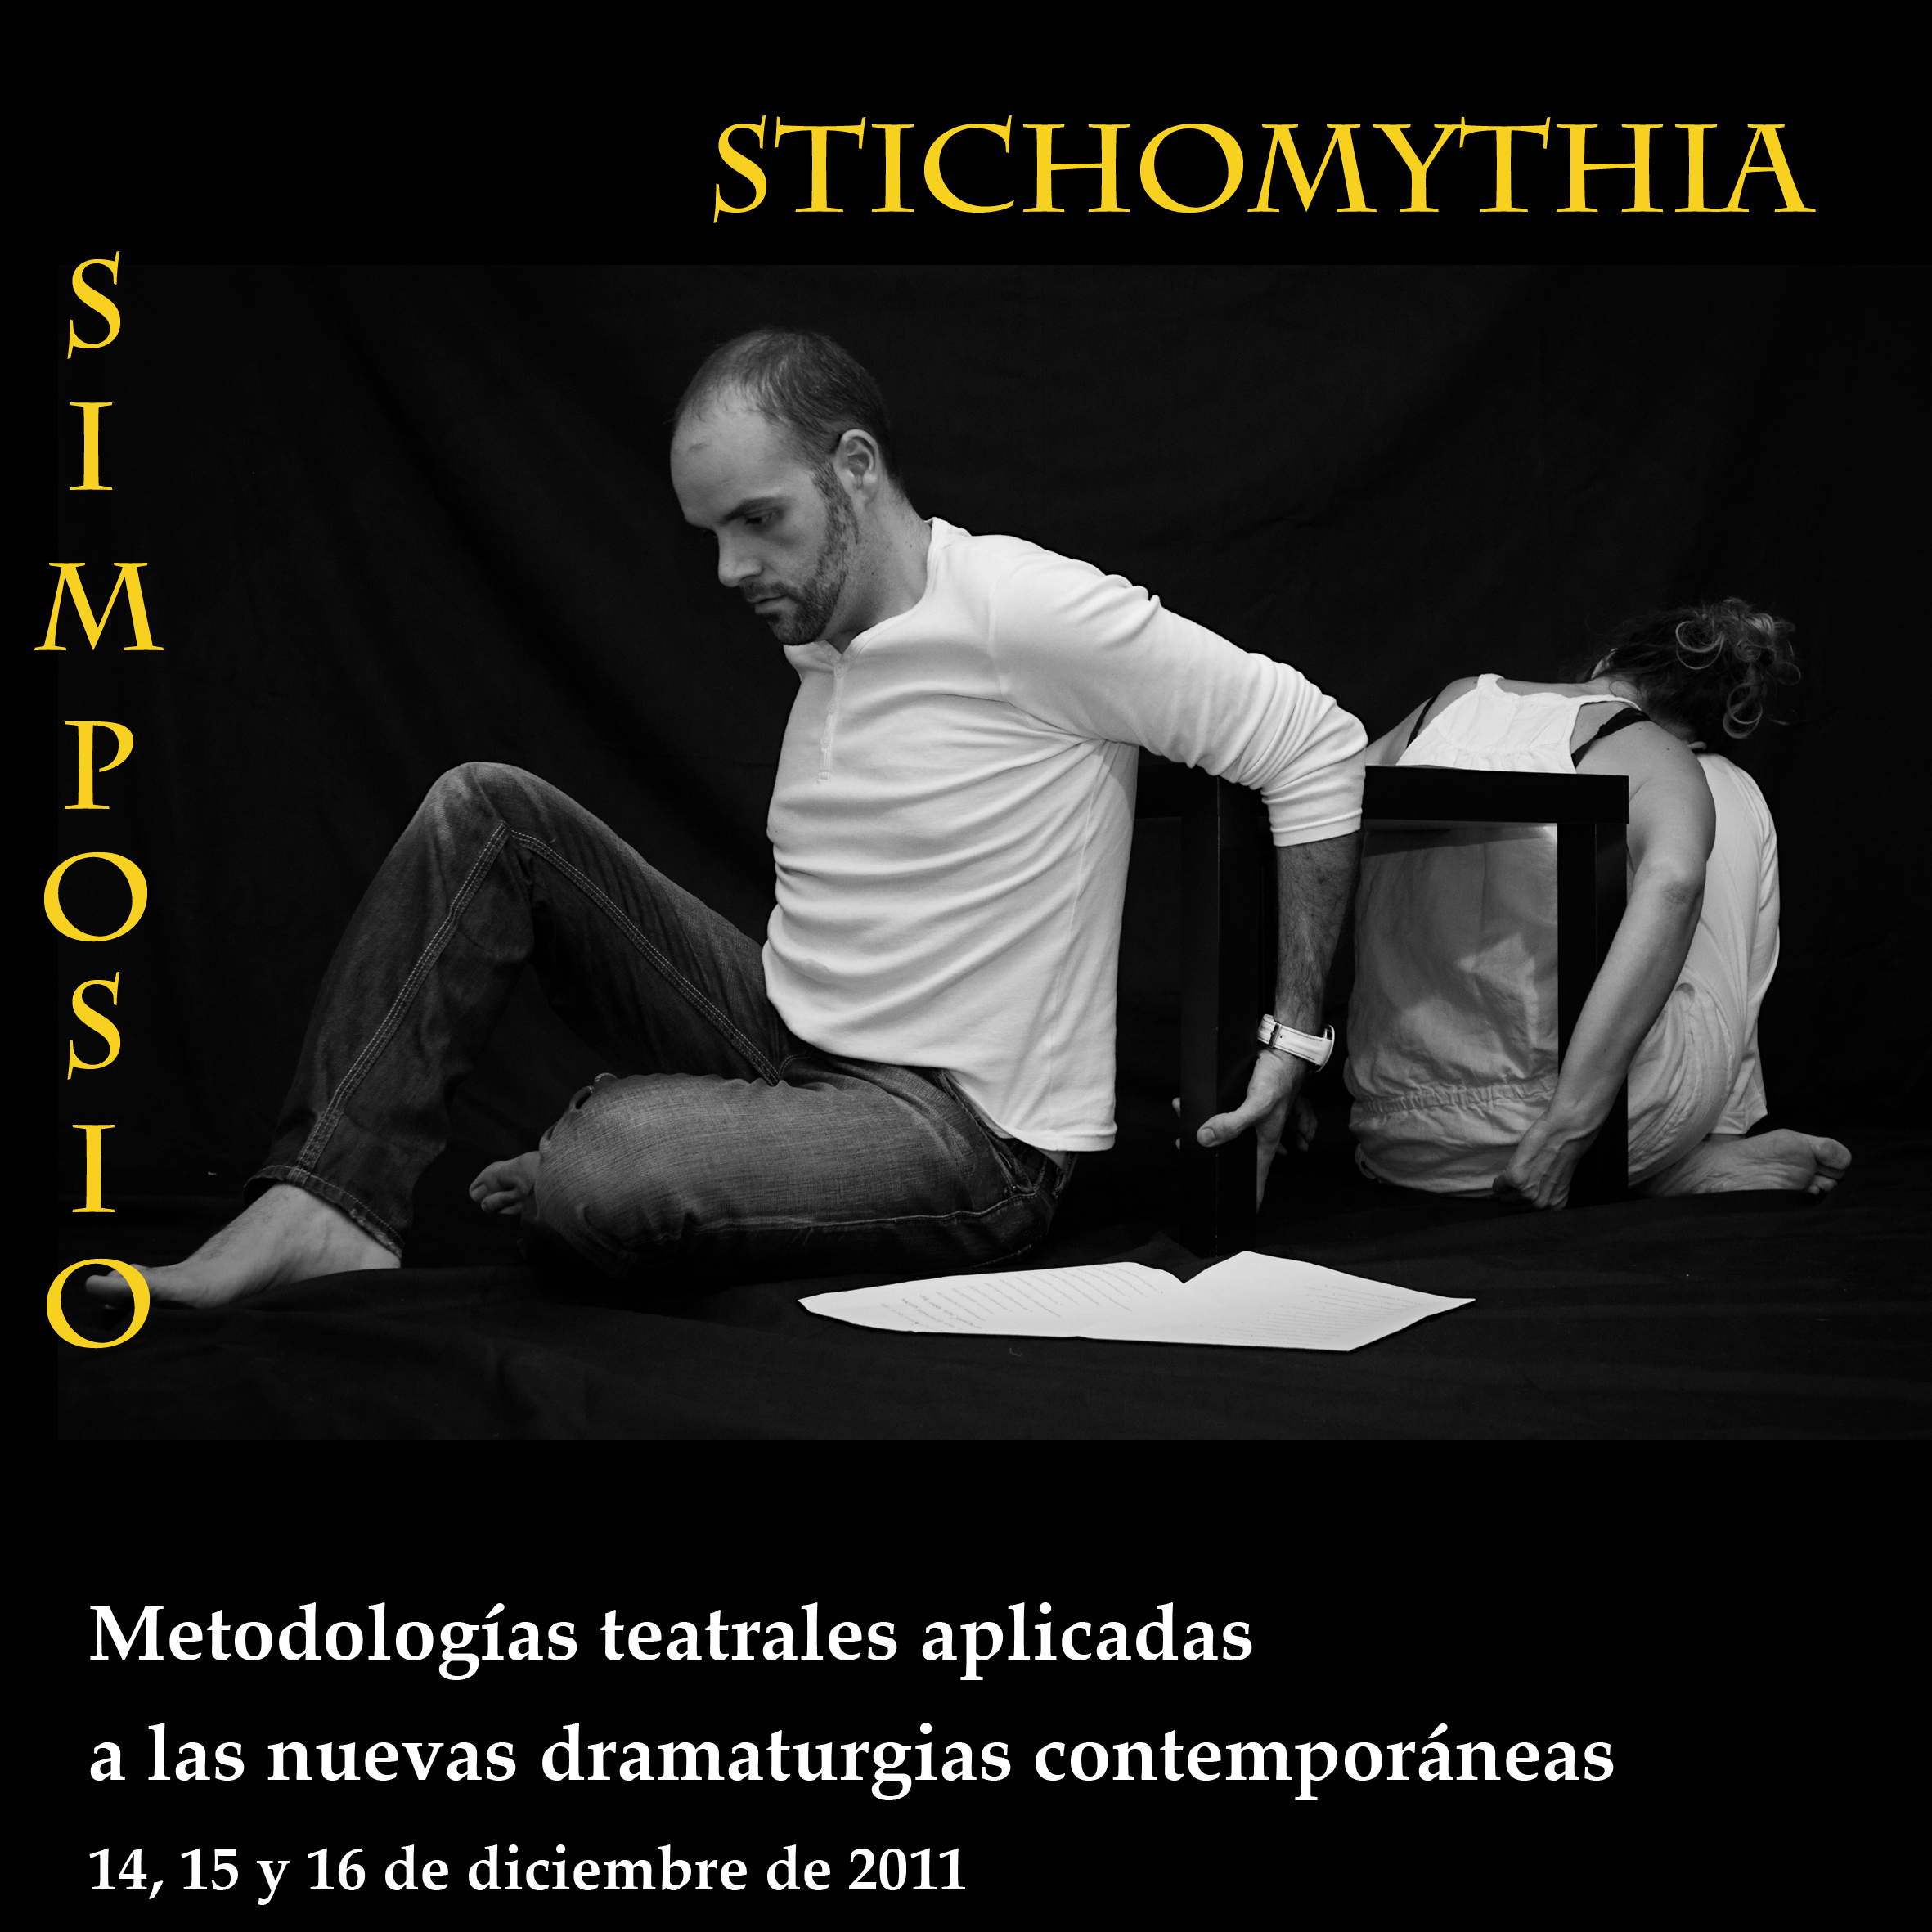 Stichomythia